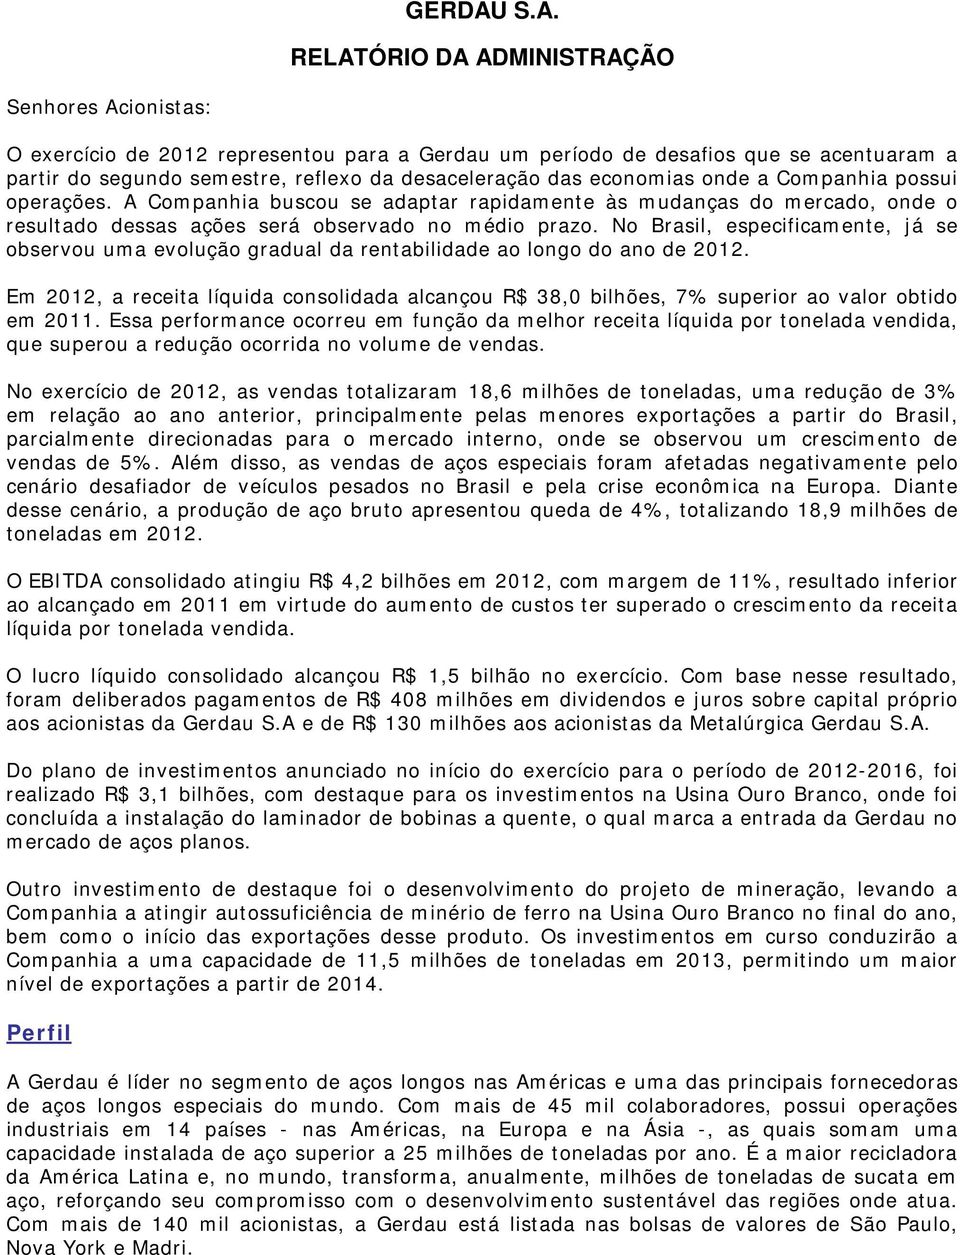 No Brasil, especificamente, já se observou uma evolução gradual da rentabilidade ao longo do ano de 2012.